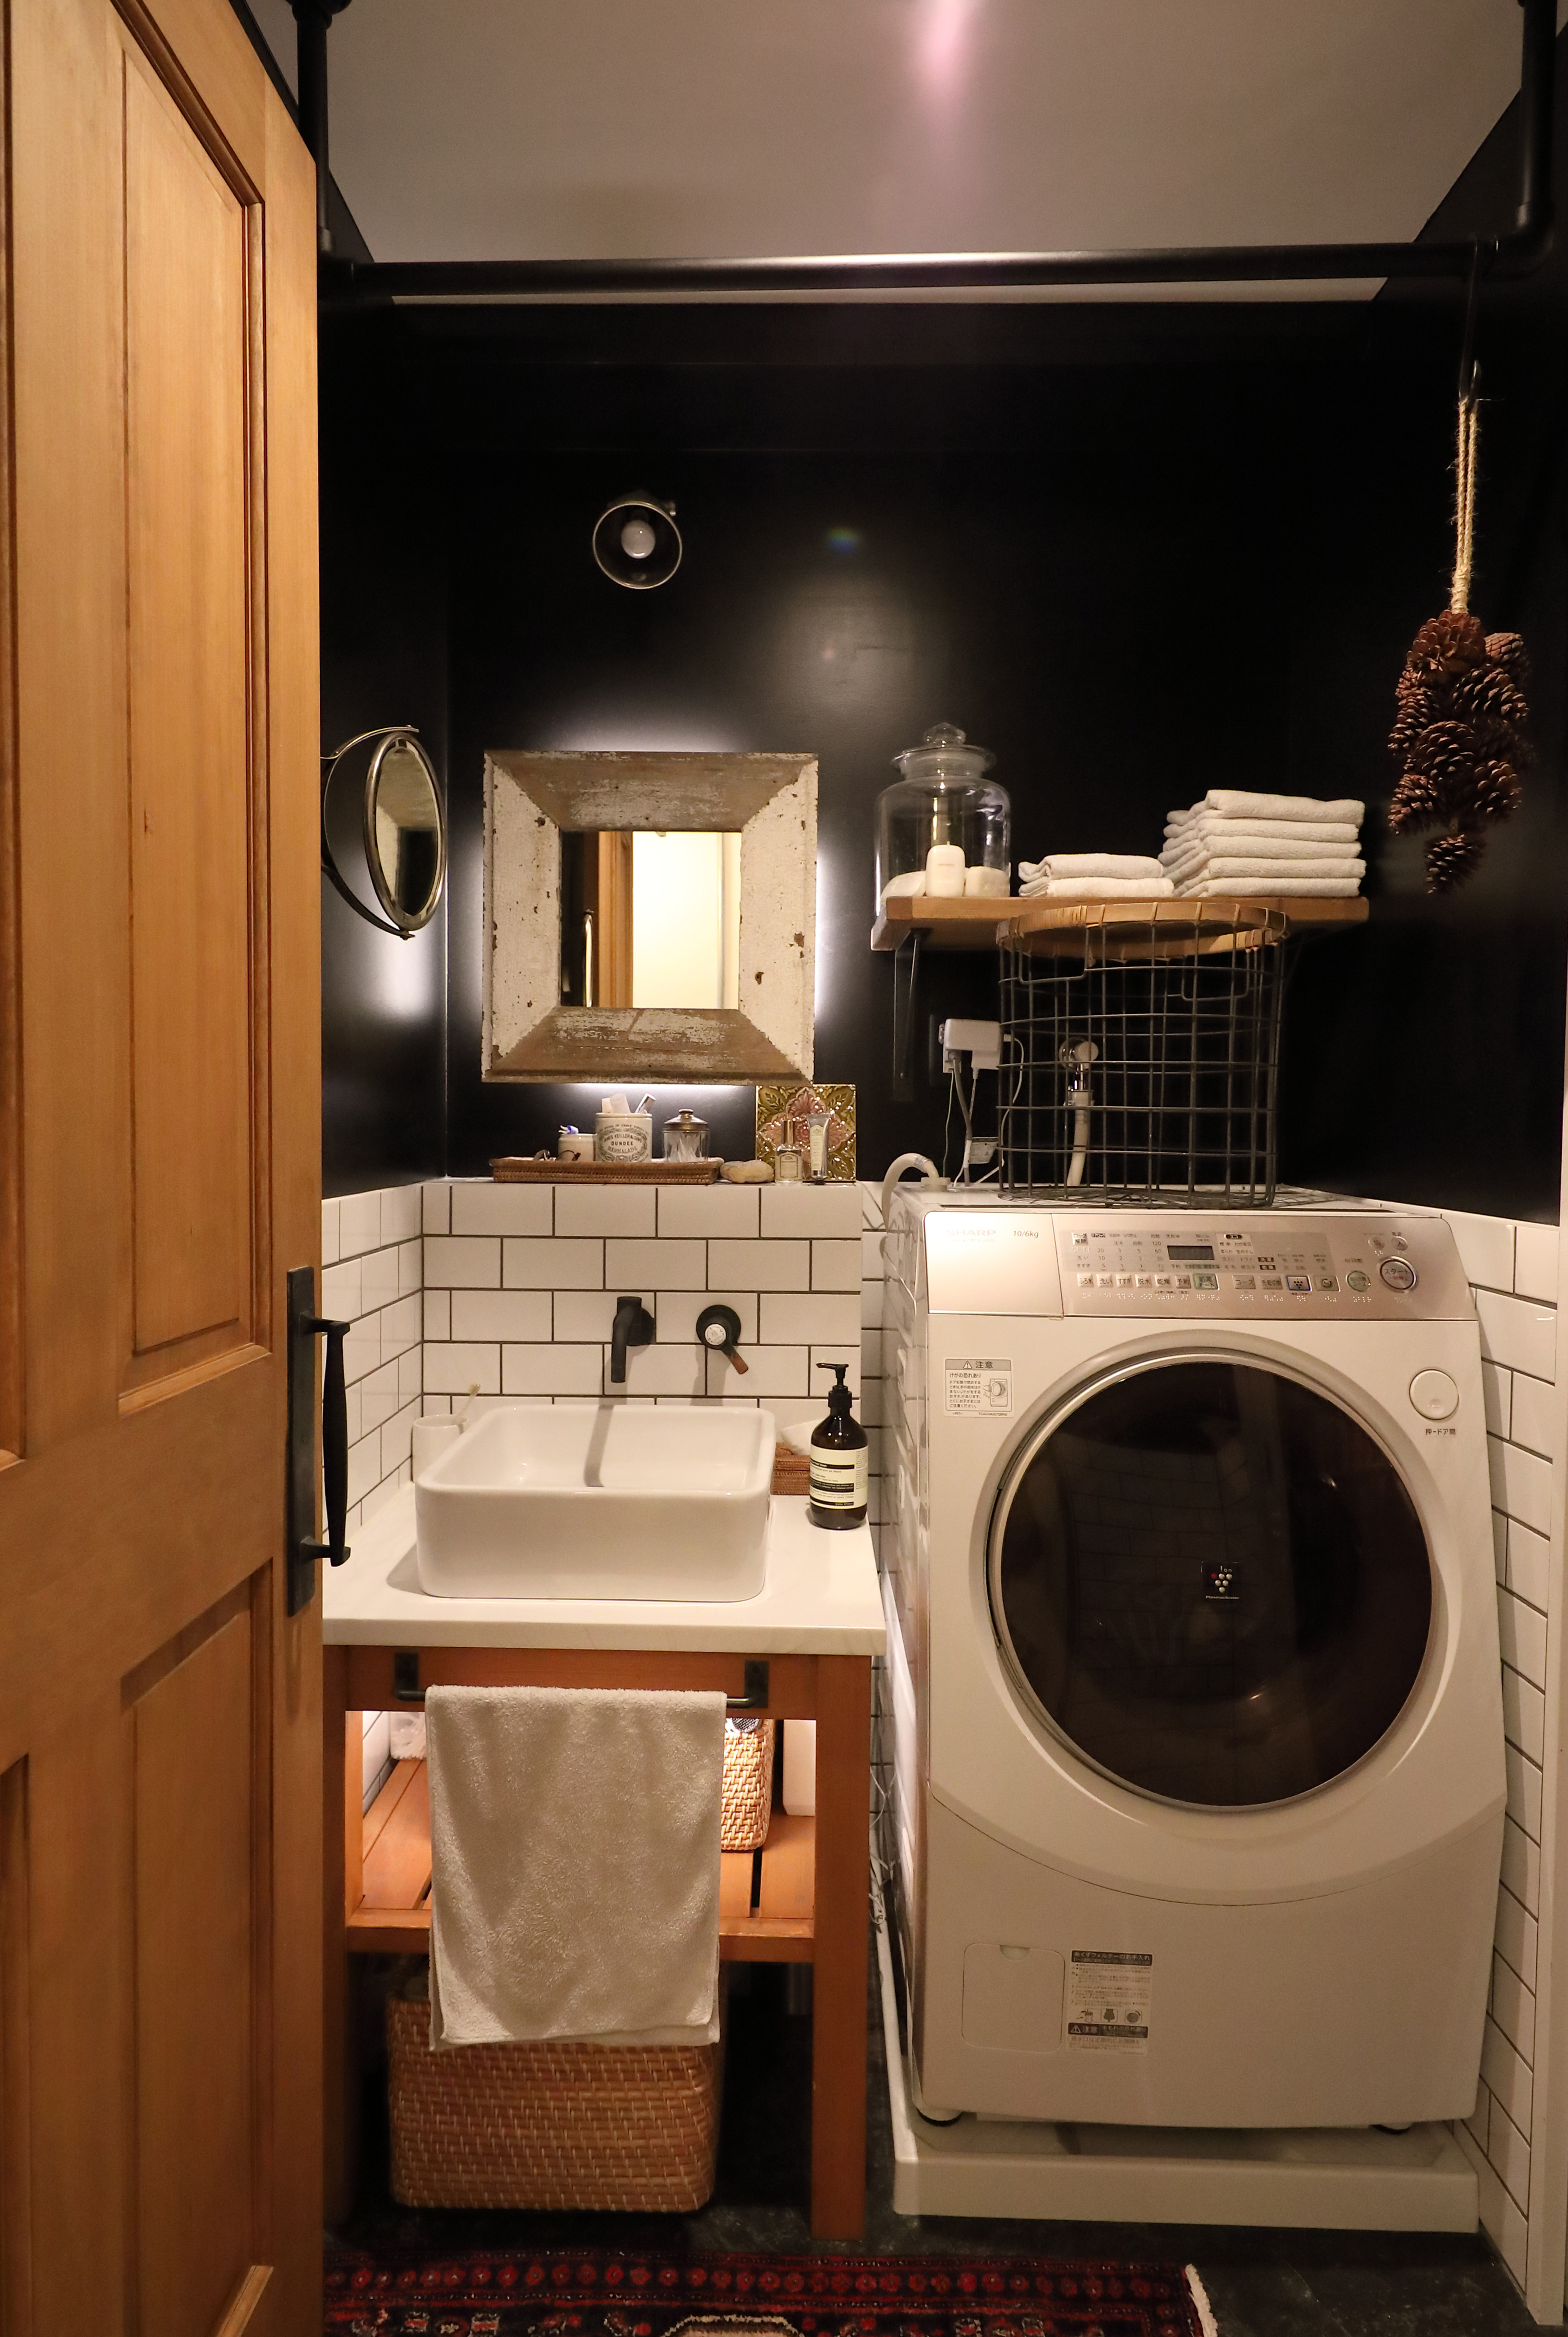 洗面所 脱衣所のおしゃれな壁紙リノベ実例 アクセントクロスの使い方と機能の選び方 リノベーションのshuken Re マンション 住宅 中古物件をリフォームやリノベで住みやすくデザインし施工します